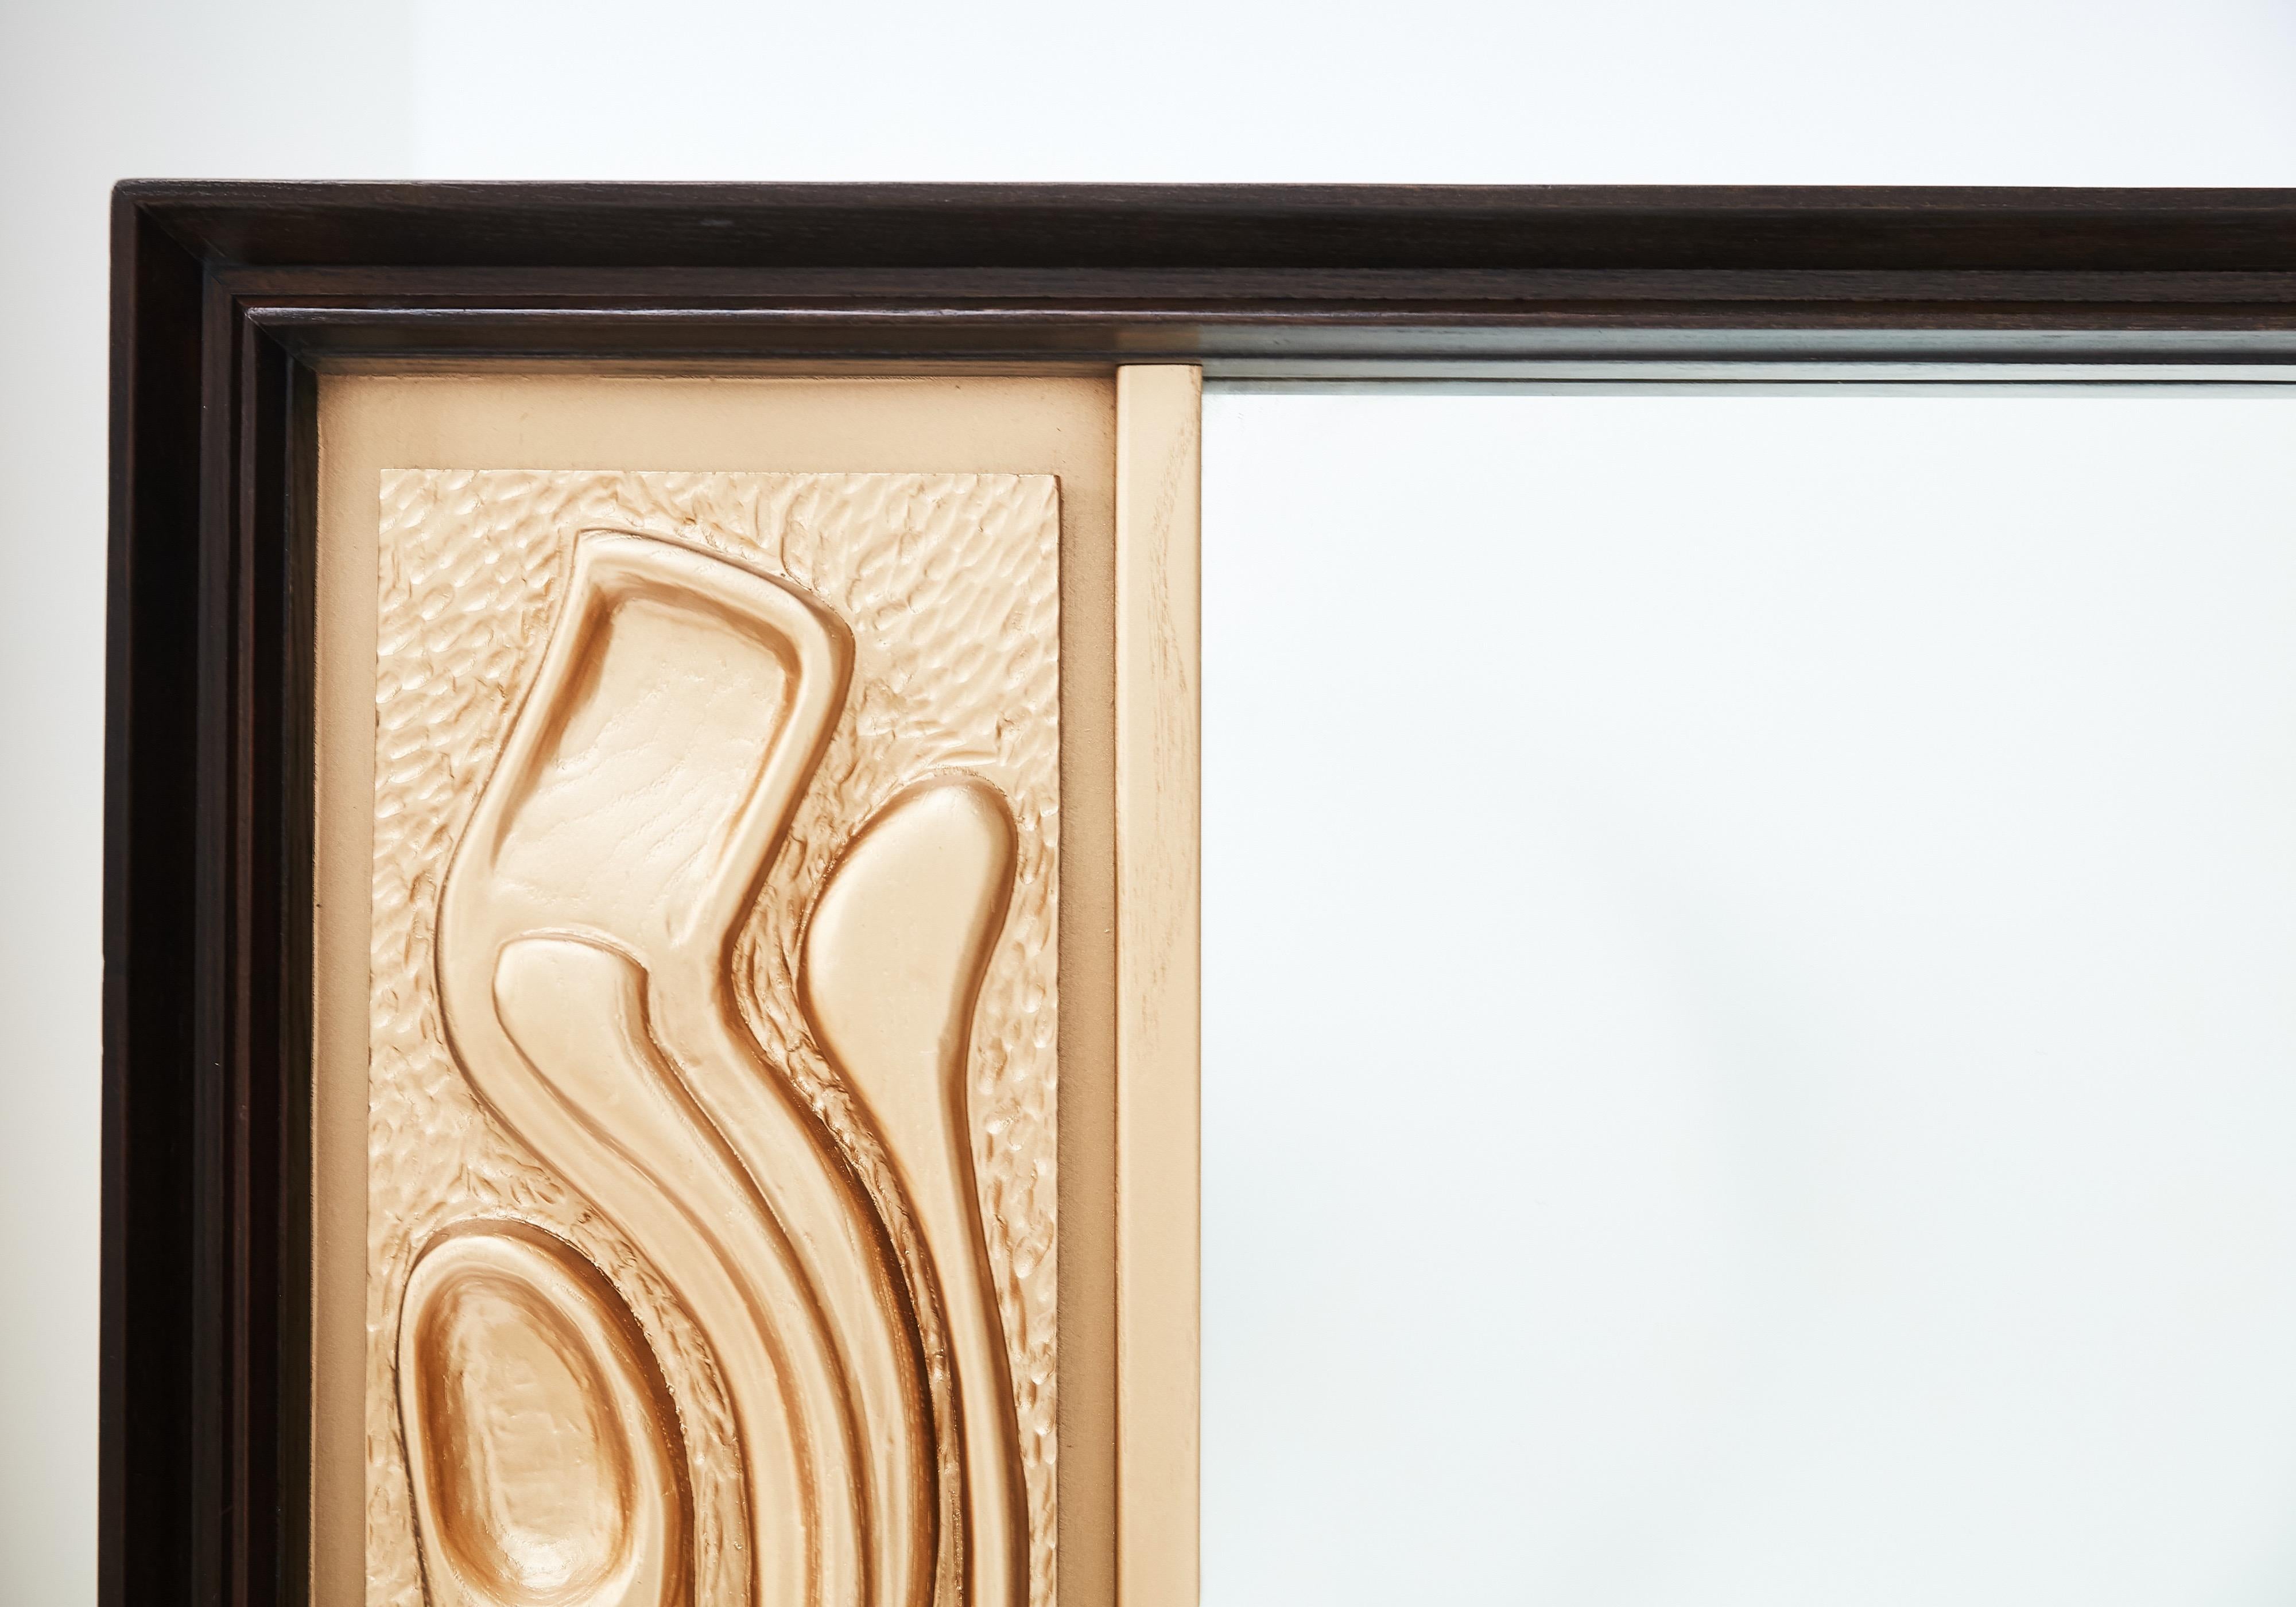 Magnifique miroir mural Pulaski de style océanique des années 1970, souvent attribué à Witco. Miroir assorti à la célèbre crédence du bureau de Don Draper dans la série télévisée Mad Men. Panneau de forme sculpturale avec finition dorée dans un